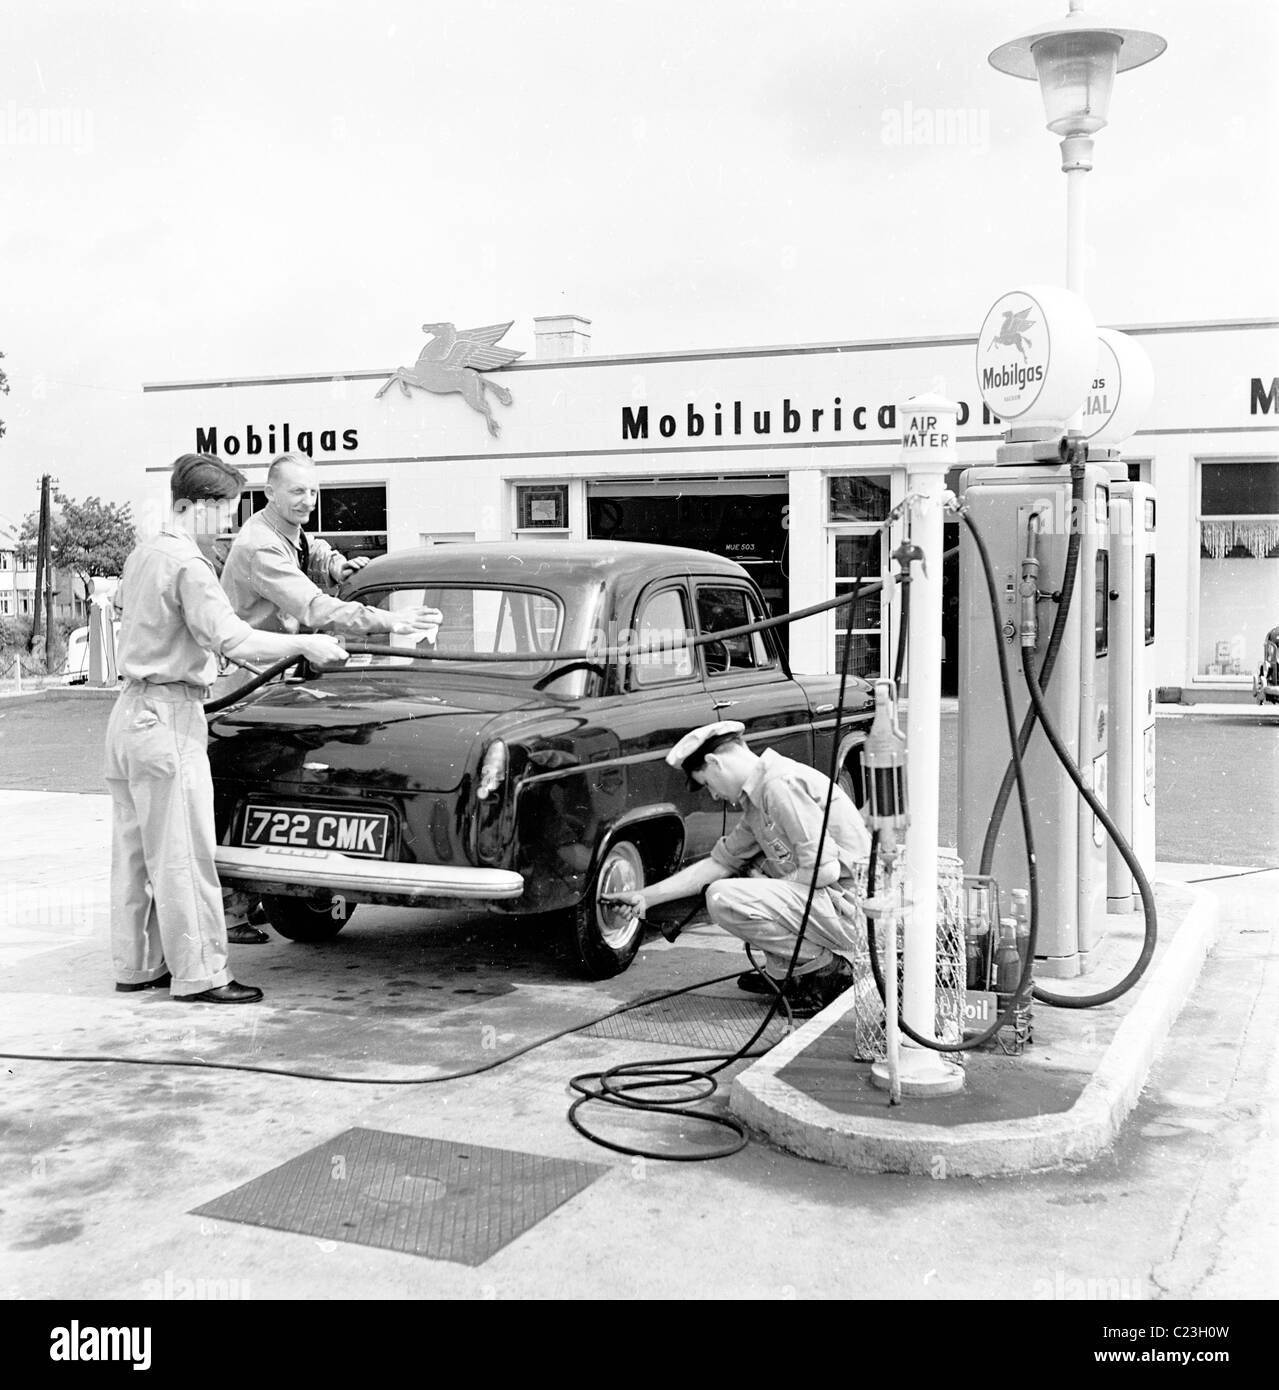 Trois agents de bord d'une voiture de service sur le parvis de l'Mobilgas garage, le tourbillon dans ce tableau historique des années 1950. Banque D'Images